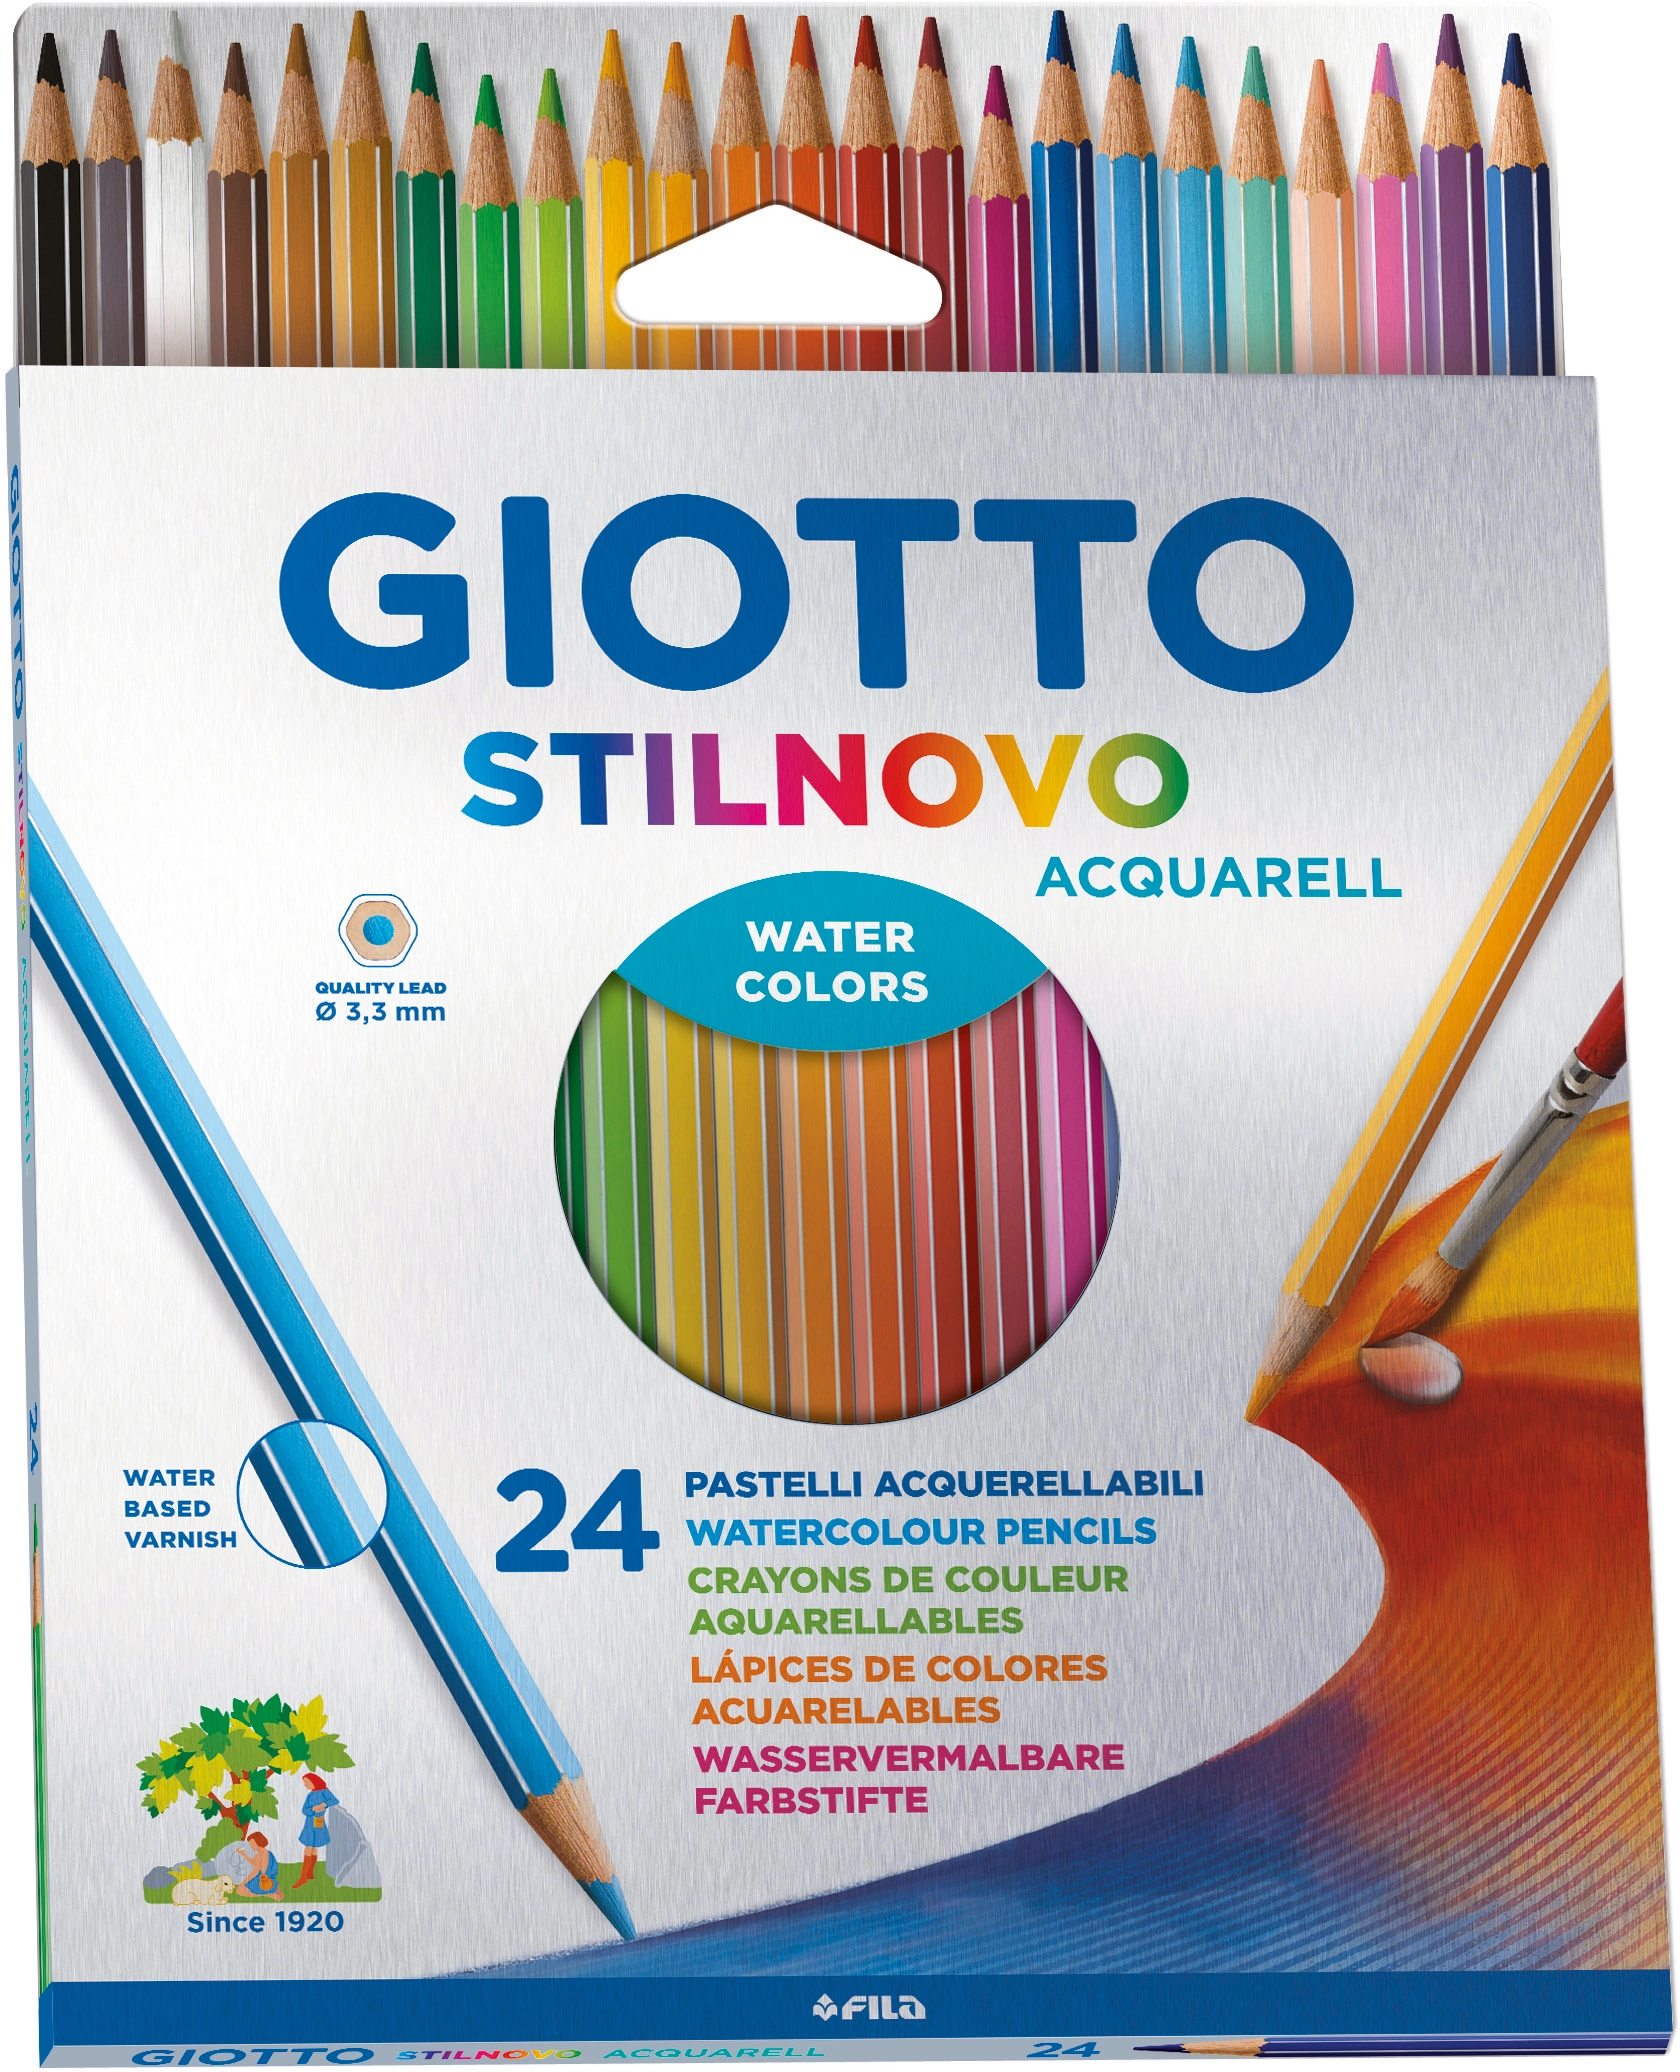 Giotto Stilnovo Acquarell Wasservermalbare Farbstifte verschiedene Farben  24 St. kaufen bei OBI